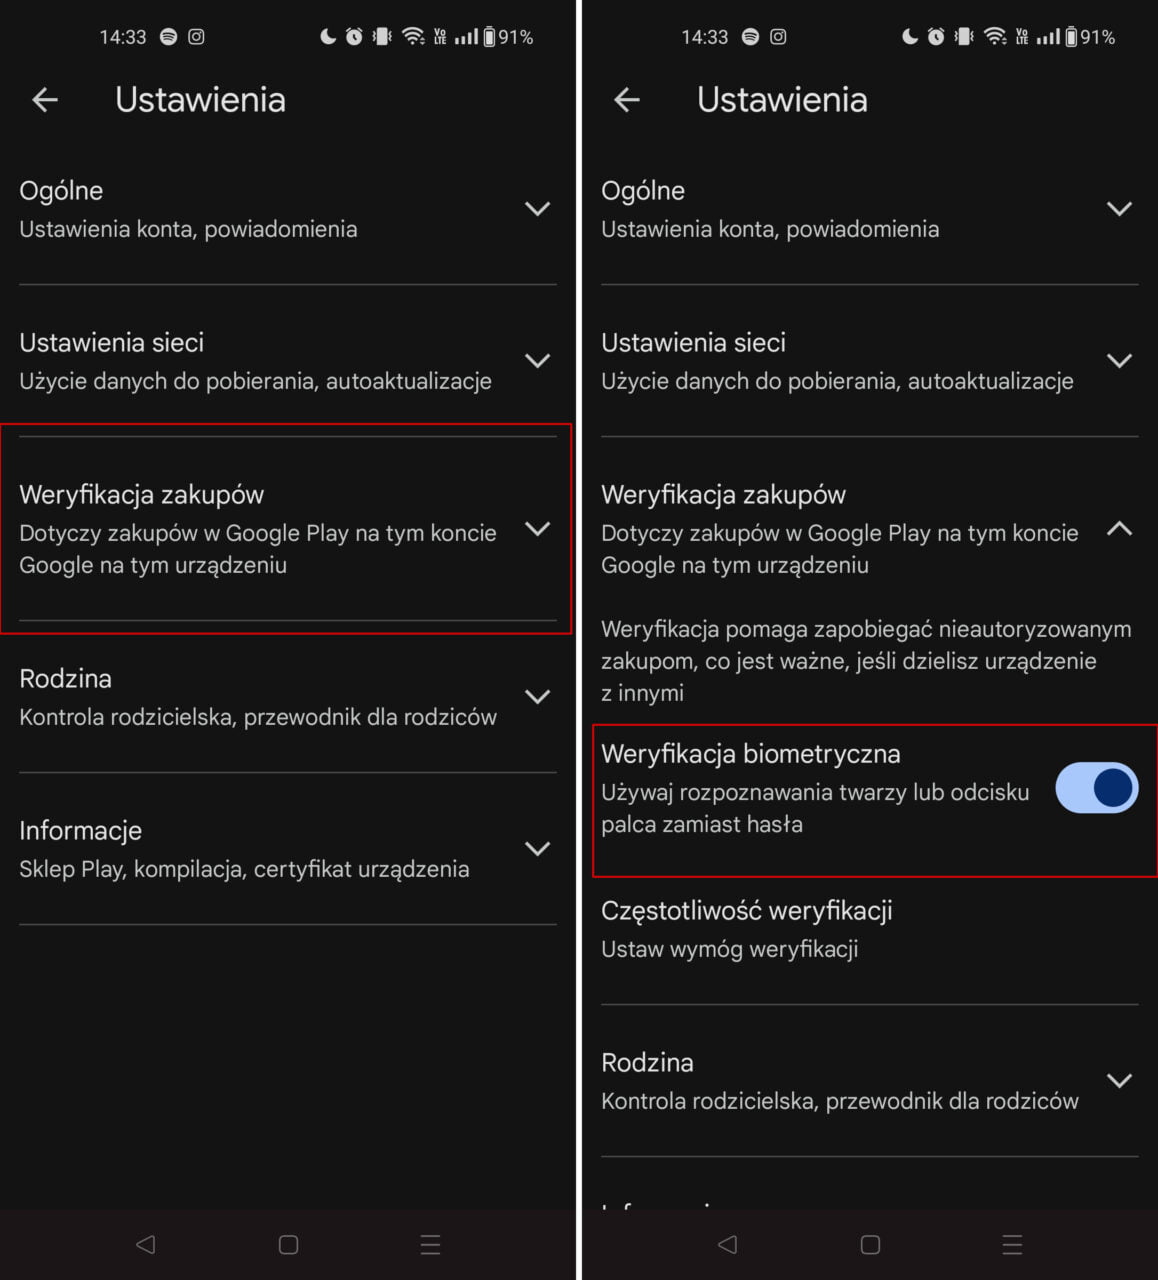 Zrzuty ekranu menu ustawień w aplikacji na smartfonie, przedstawiające opcje dotyczące weryfikacji zakupów w Google Play. Na lewym zrzucie ekranu sekcja 'Weryfikacja zakupów' jest zaznaczona czerwoną ramką, na prawym włączony jest przełącznik przy opcji 'Weryfikacja biometryczna'.